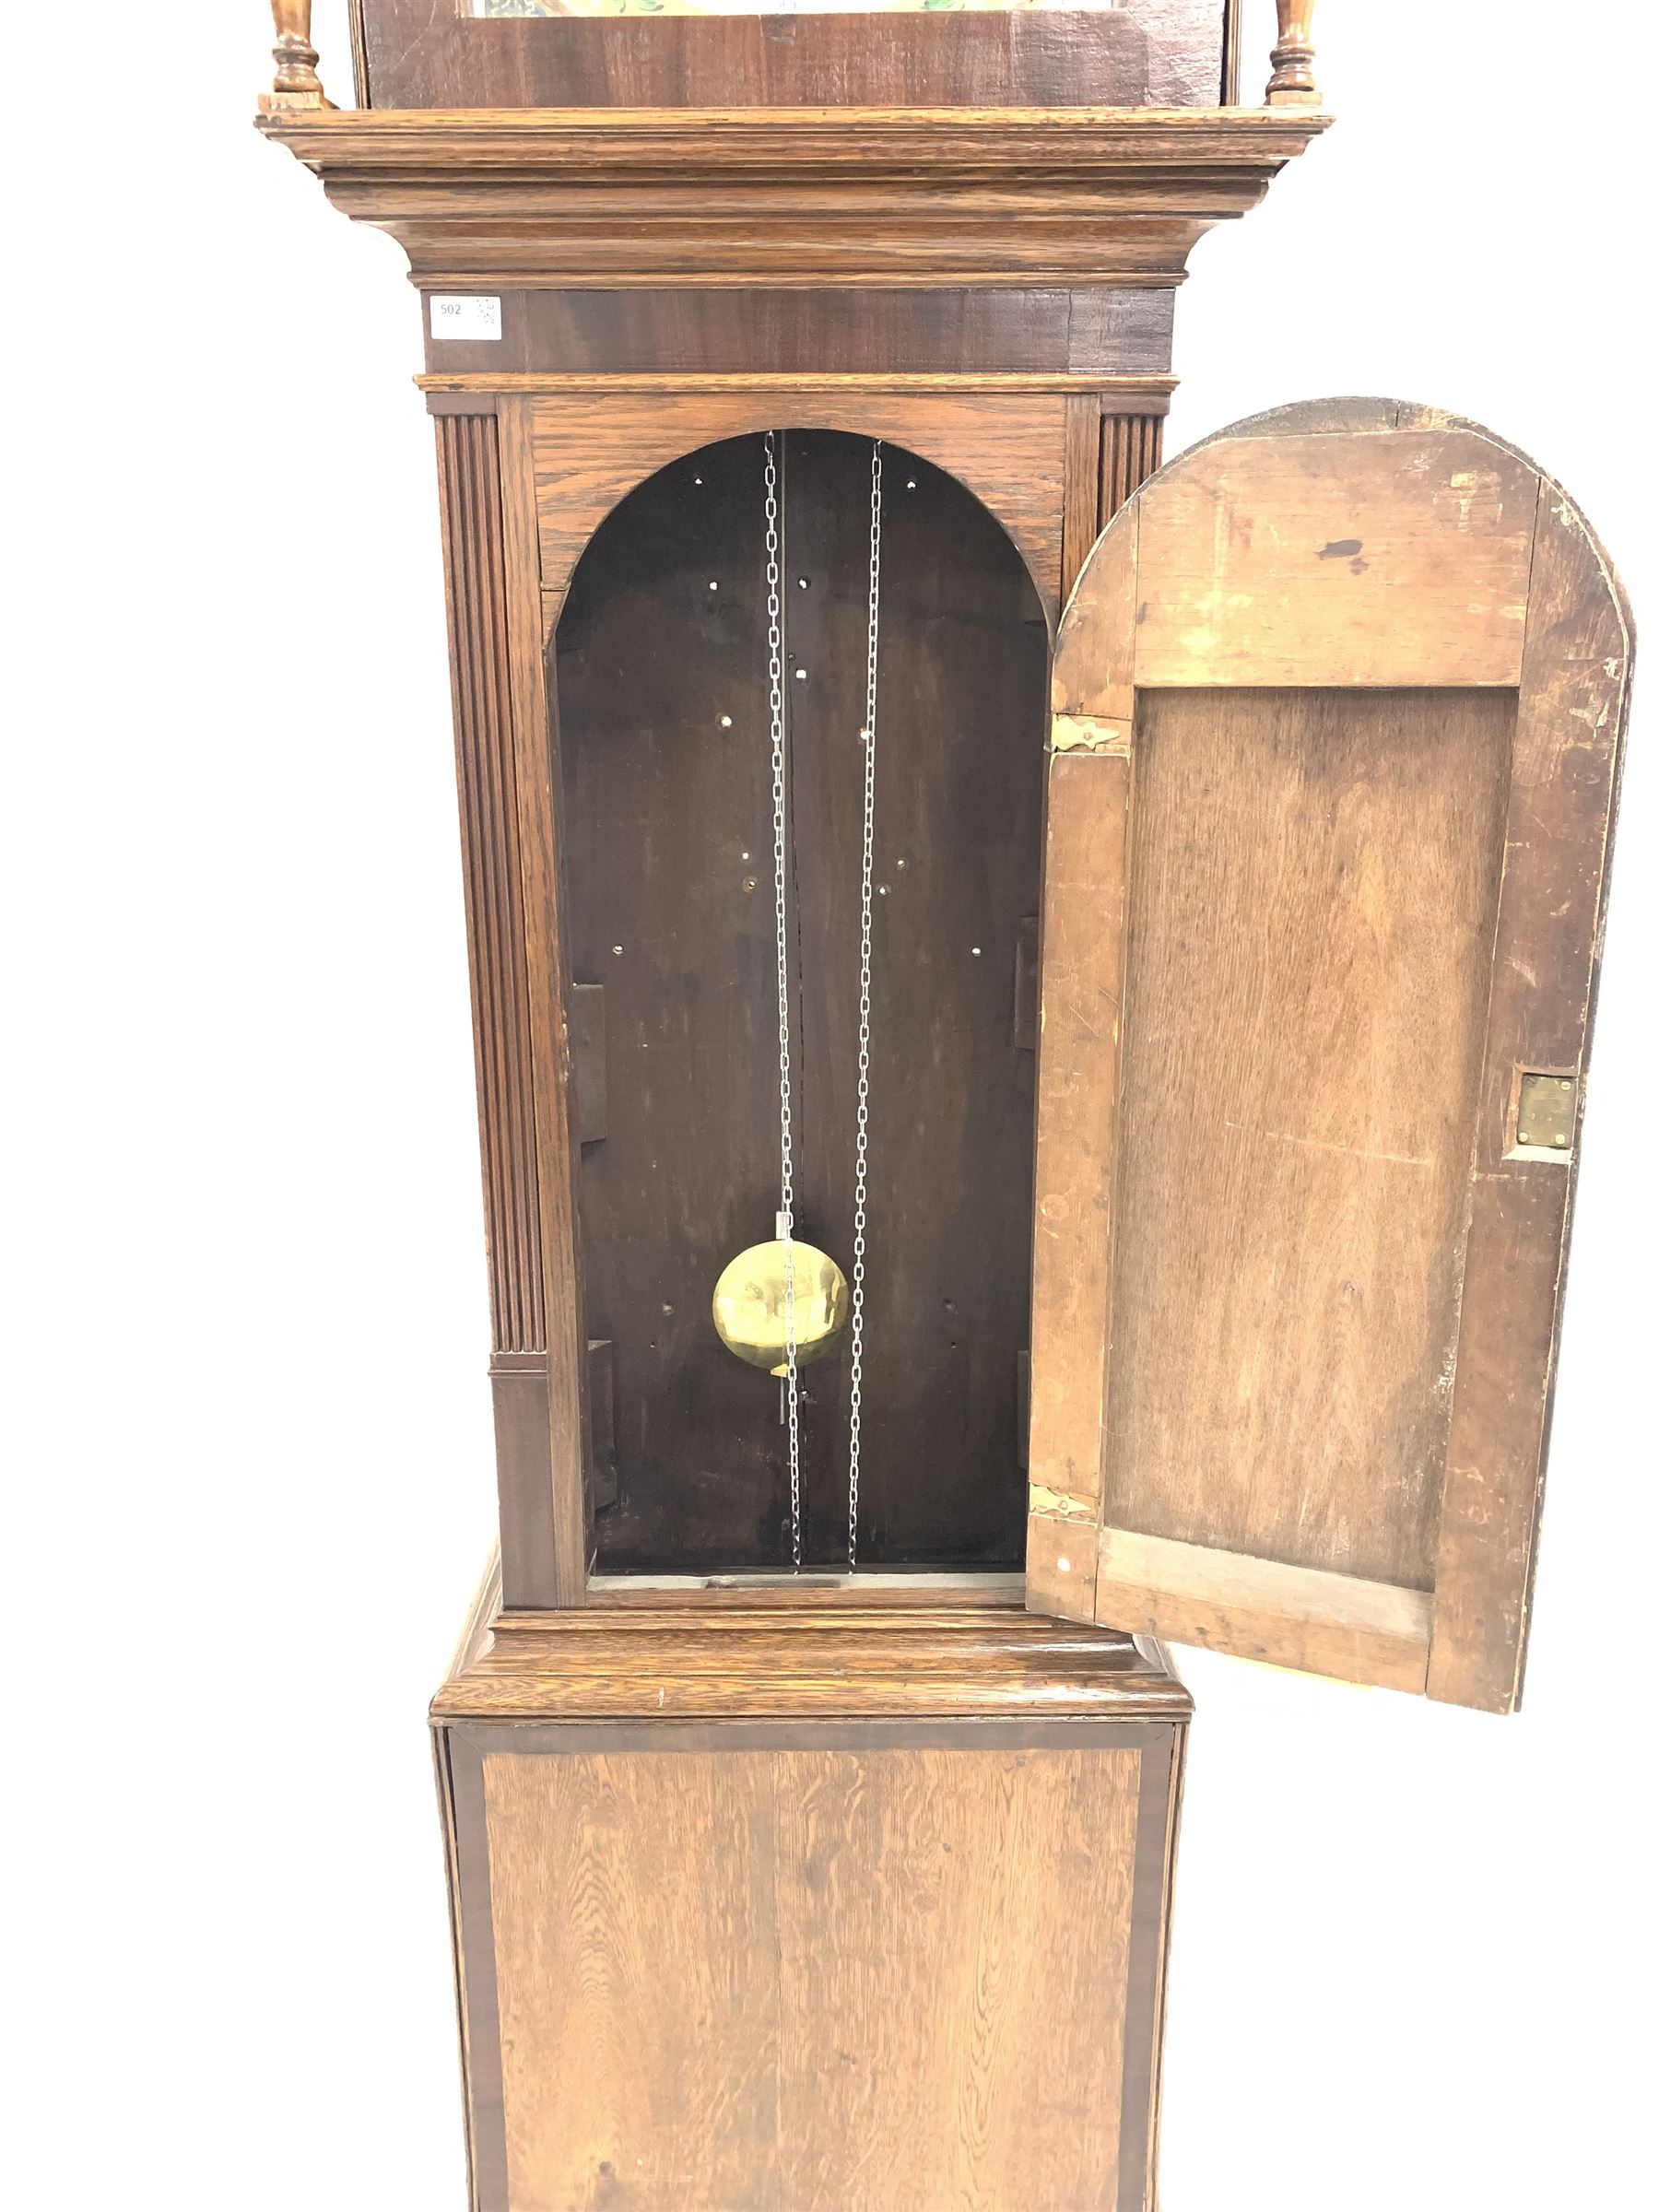 Early 19th century oak and mahogany longcase clock - Image 2 of 4